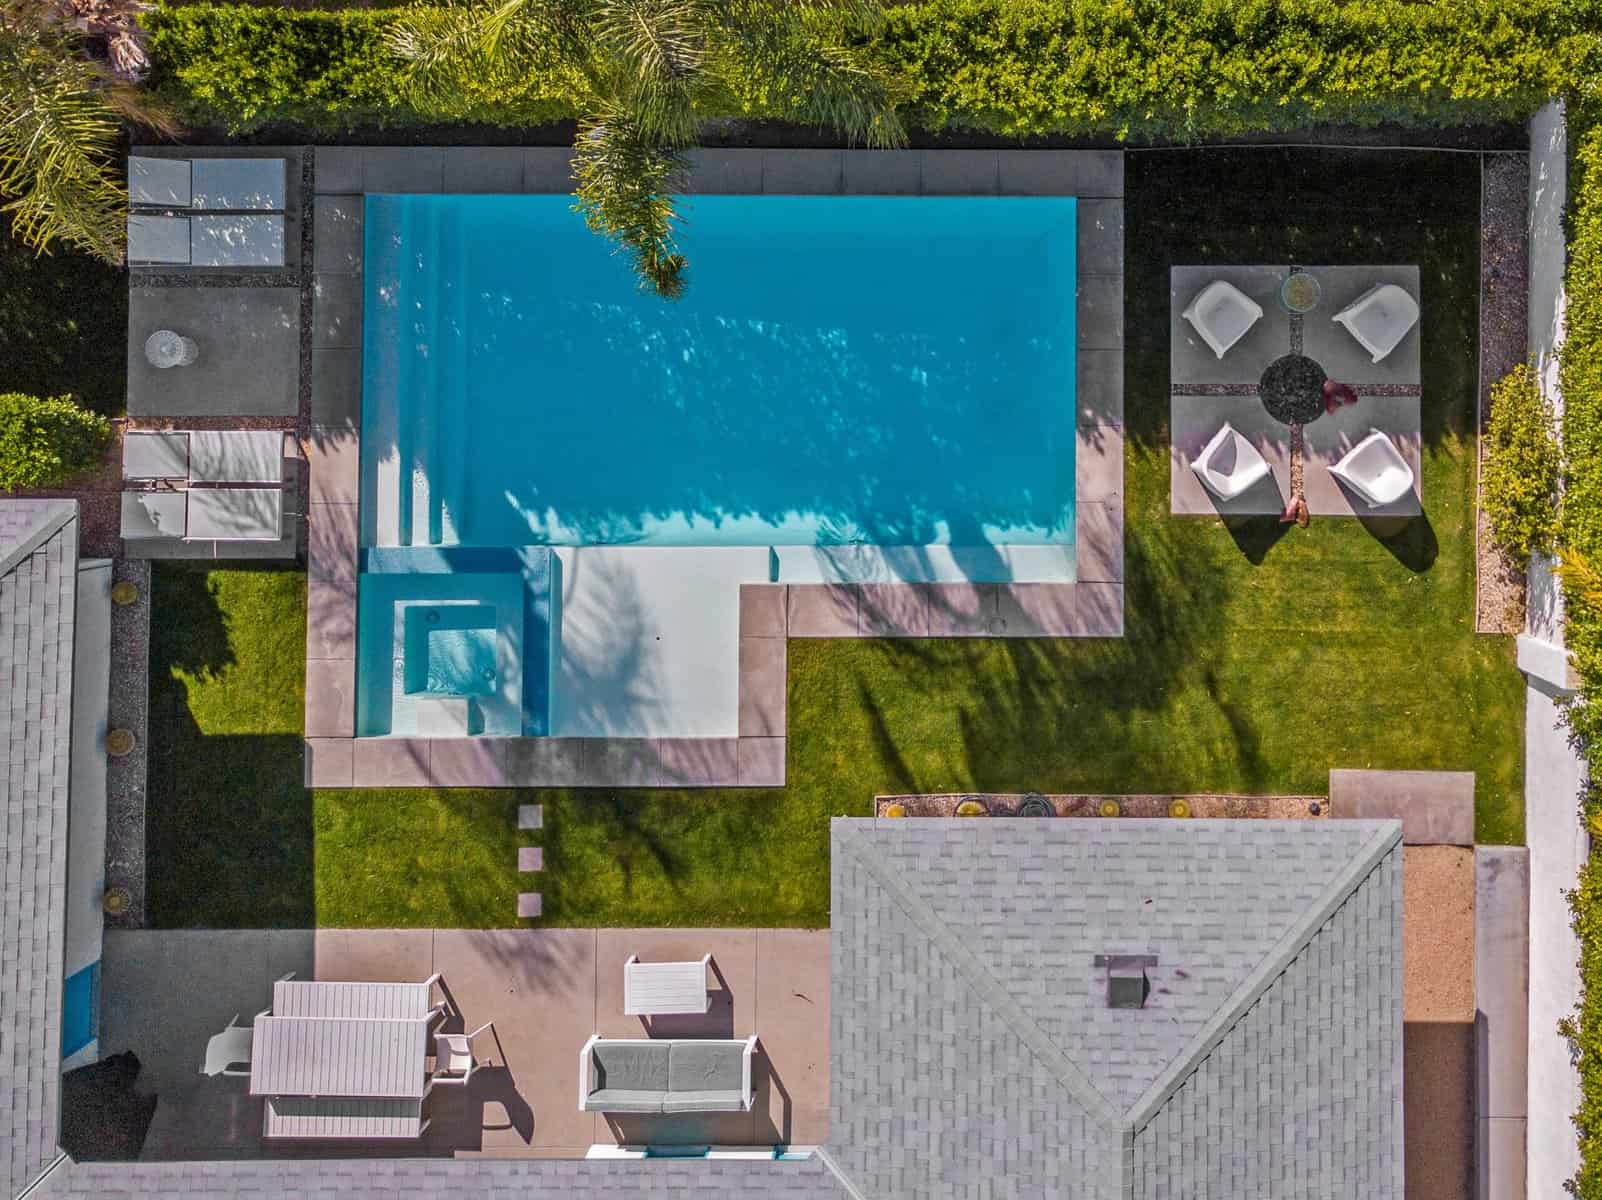 beautiful-drone-photo-of-pool-in-backyard-2023-11-27-05-20-48-utc